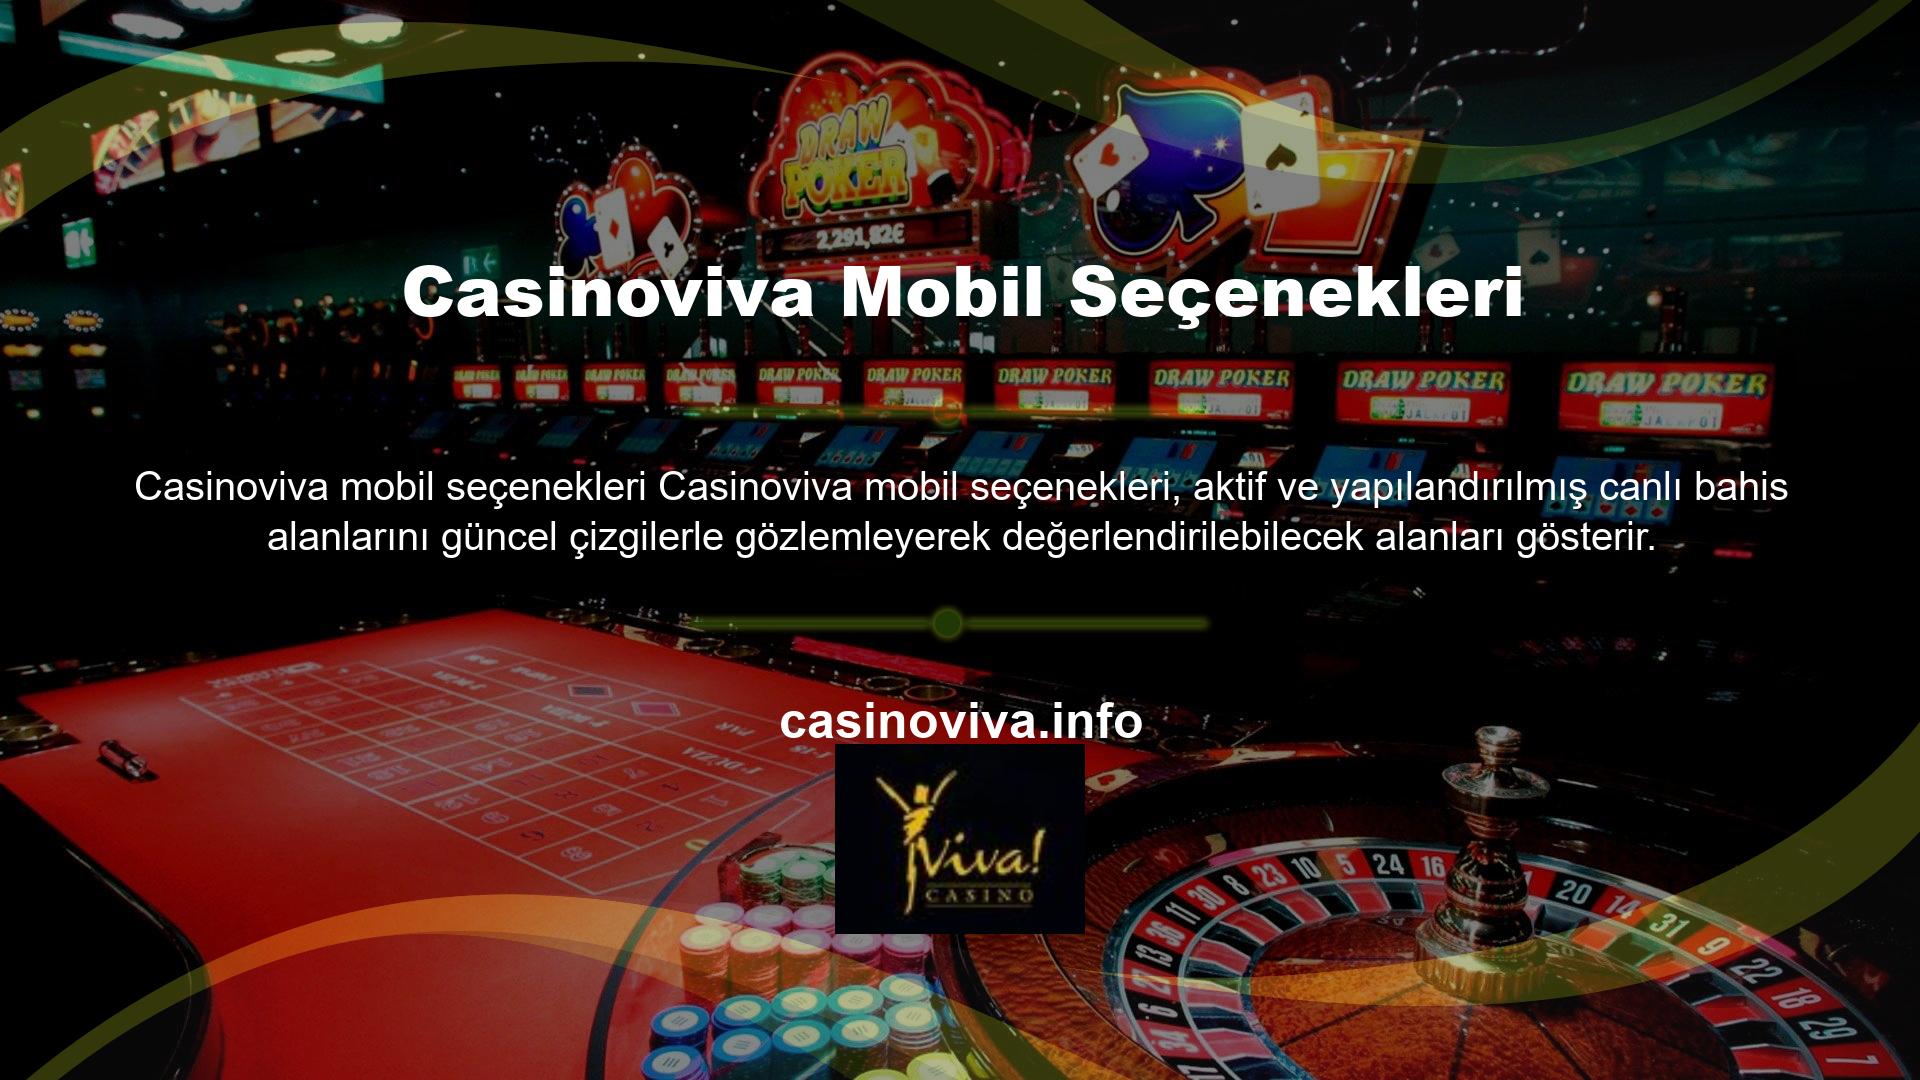 Bu açıdan bakıldığında Casinoviva mobil giriş teknolojisi, sitenin temel seviyesini daha erişilebilir bir sisteme doğrudan ulaşmayı destekleyen bir yapıda bırakıyor